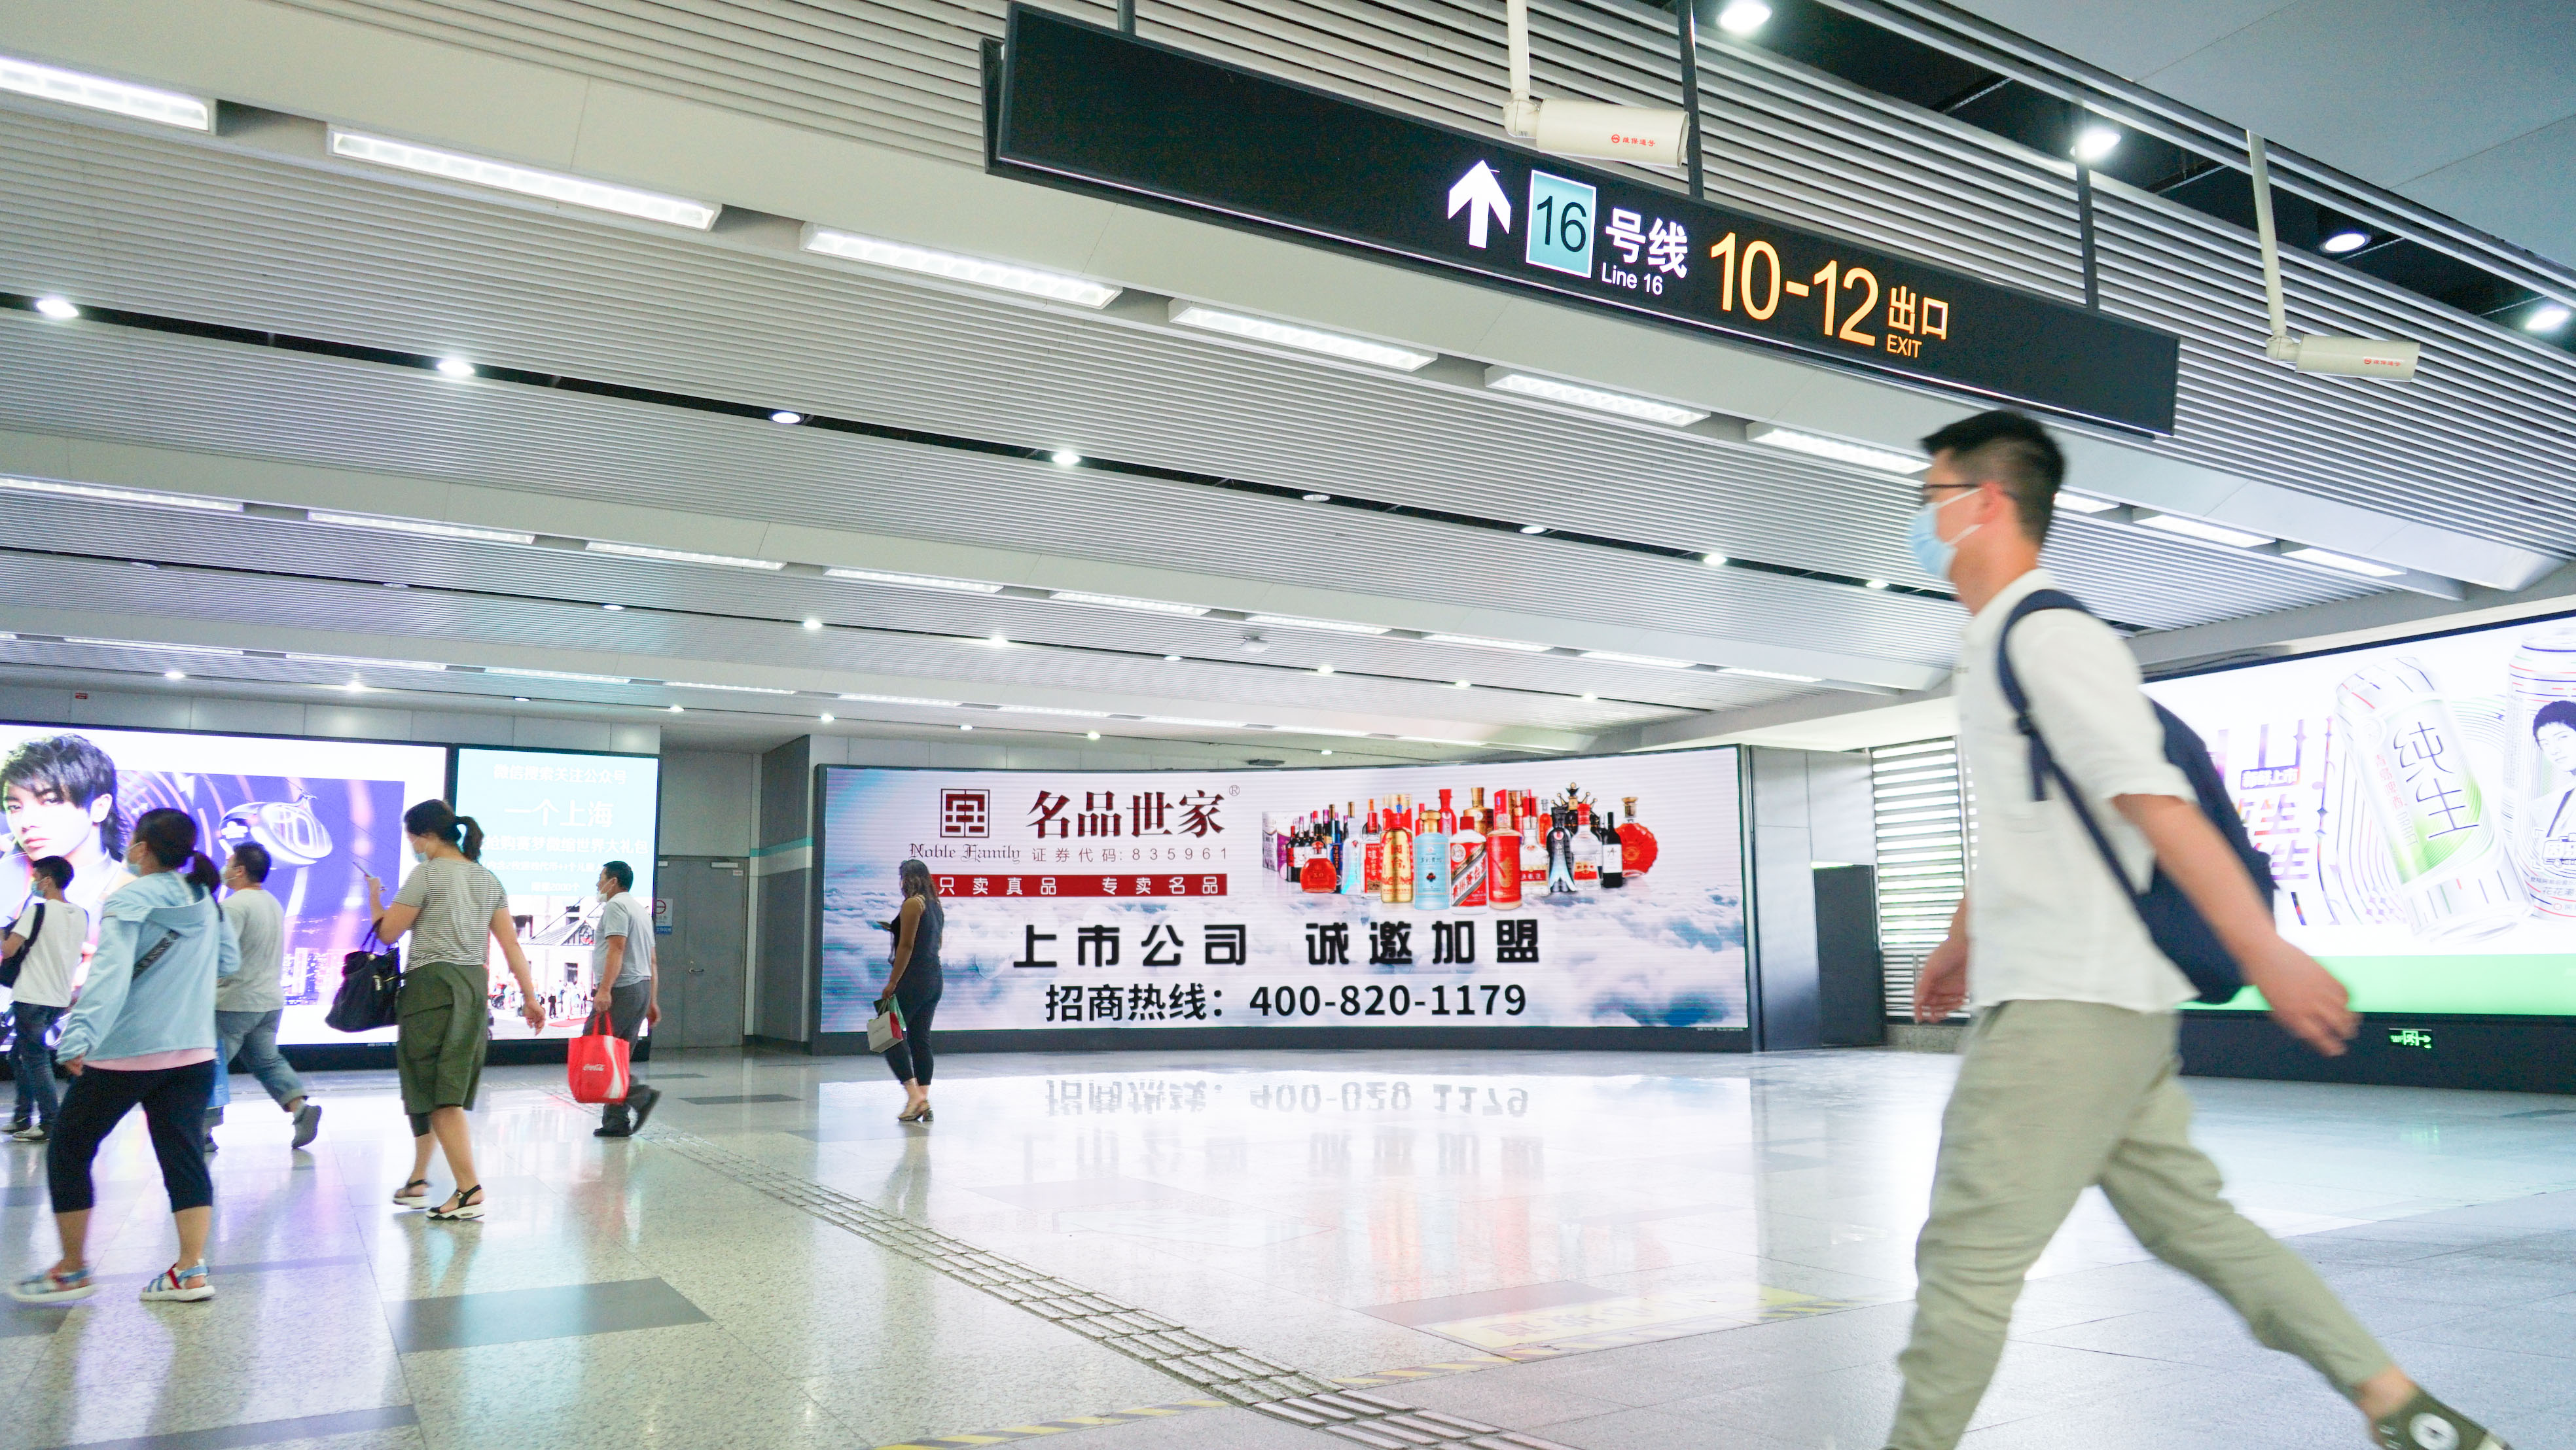 上海地铁广告2.jpg